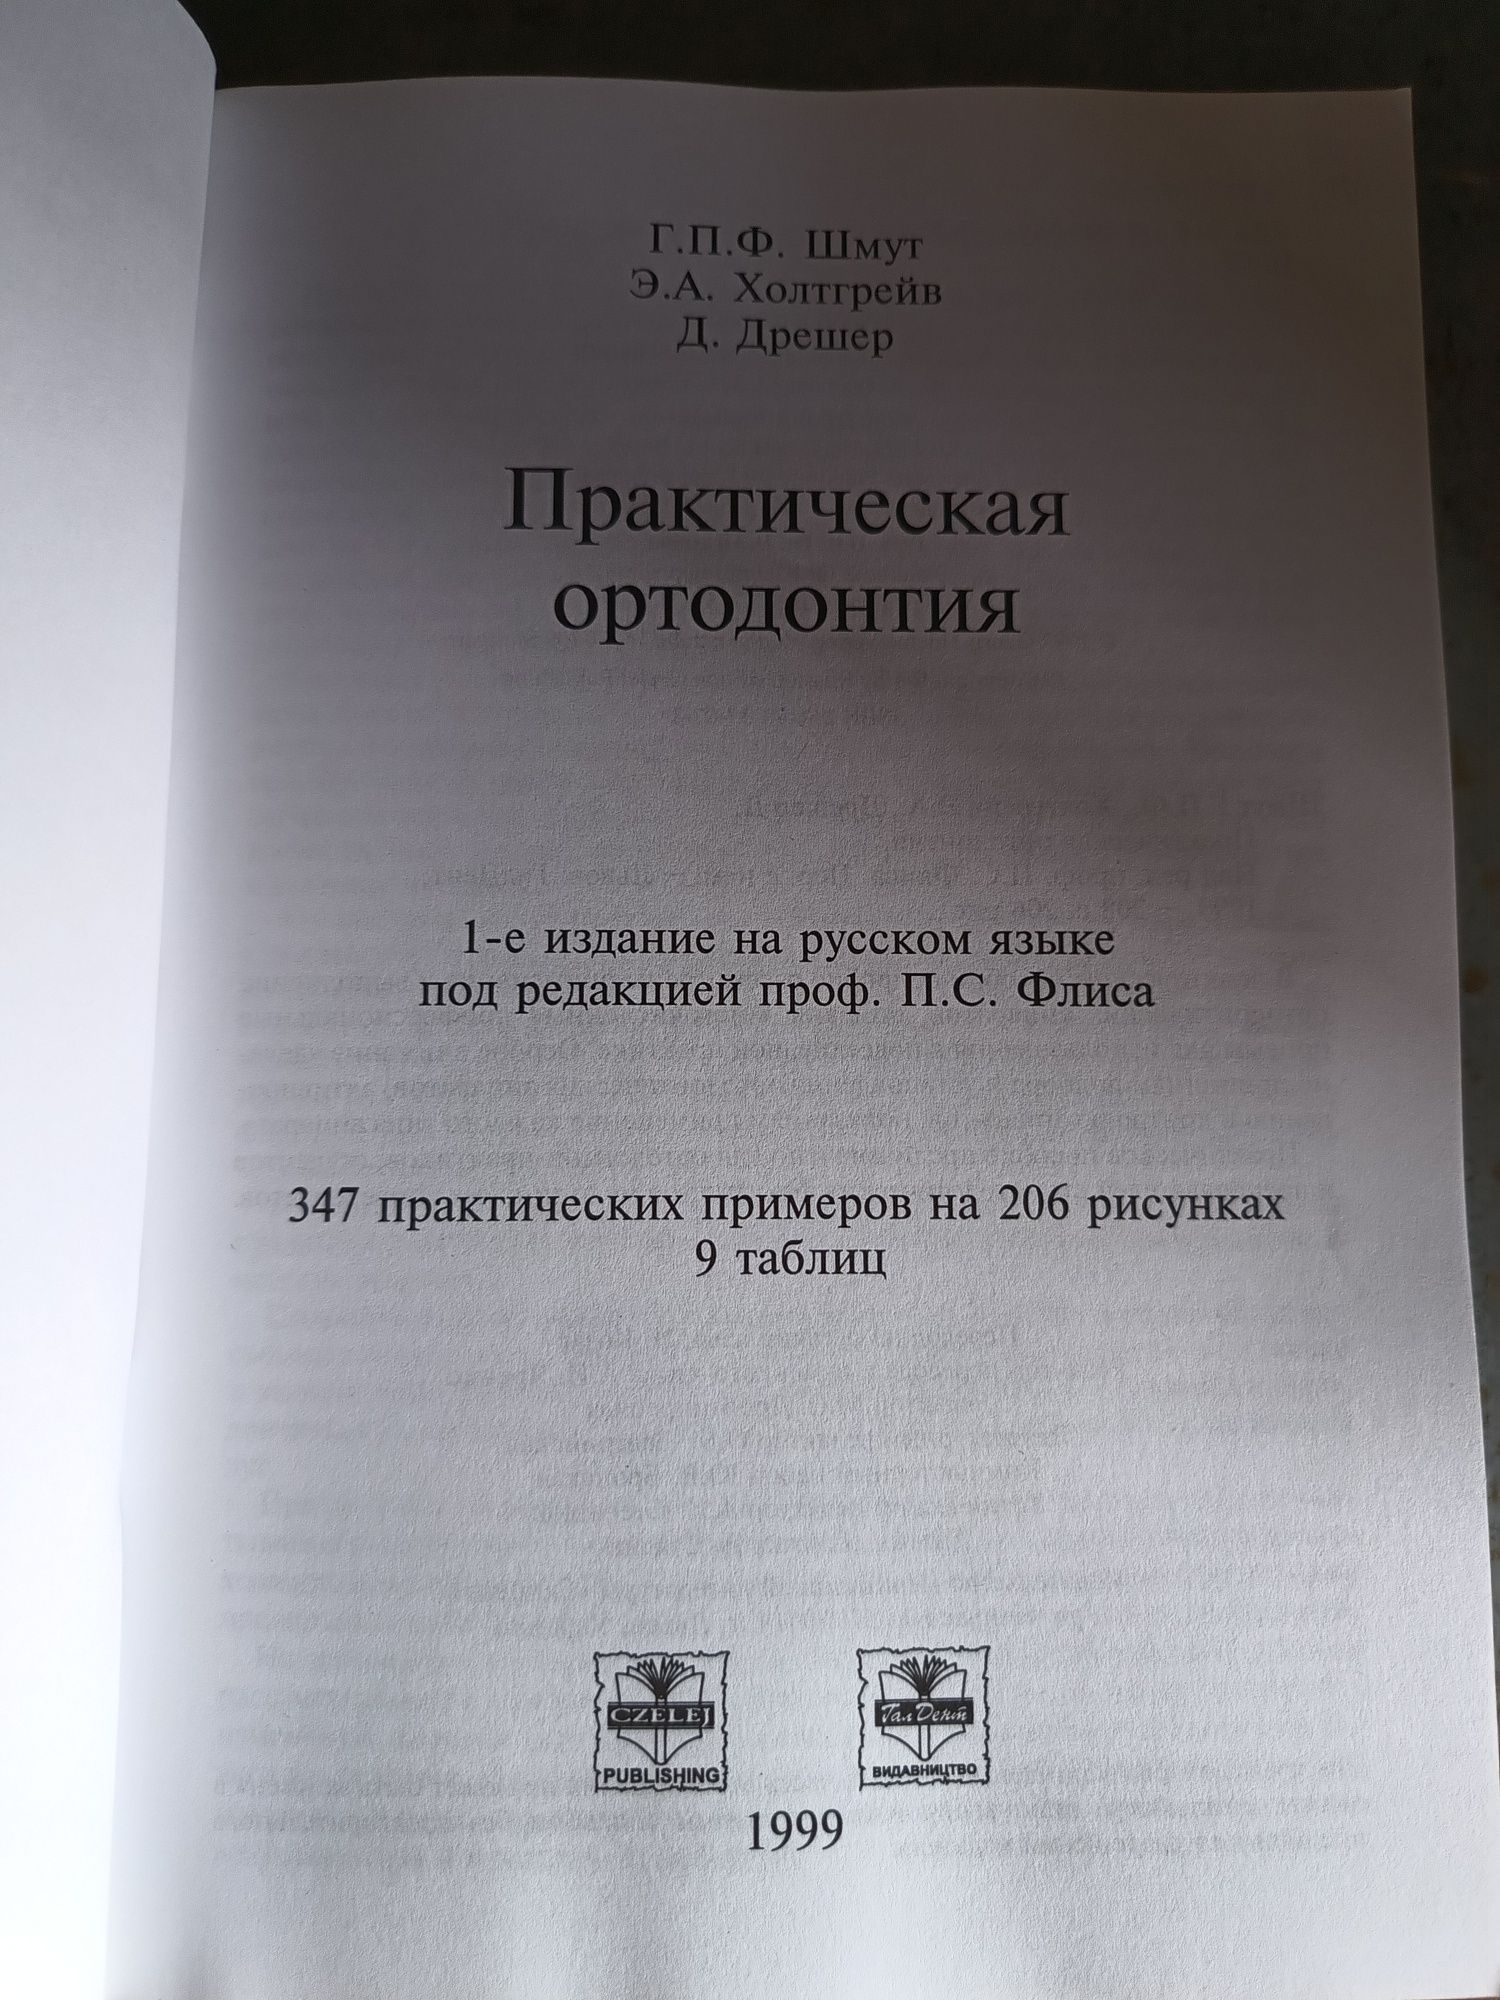 Практическая Ортодонтия, Шмут, Холтгрейв, Дрешер, 1999